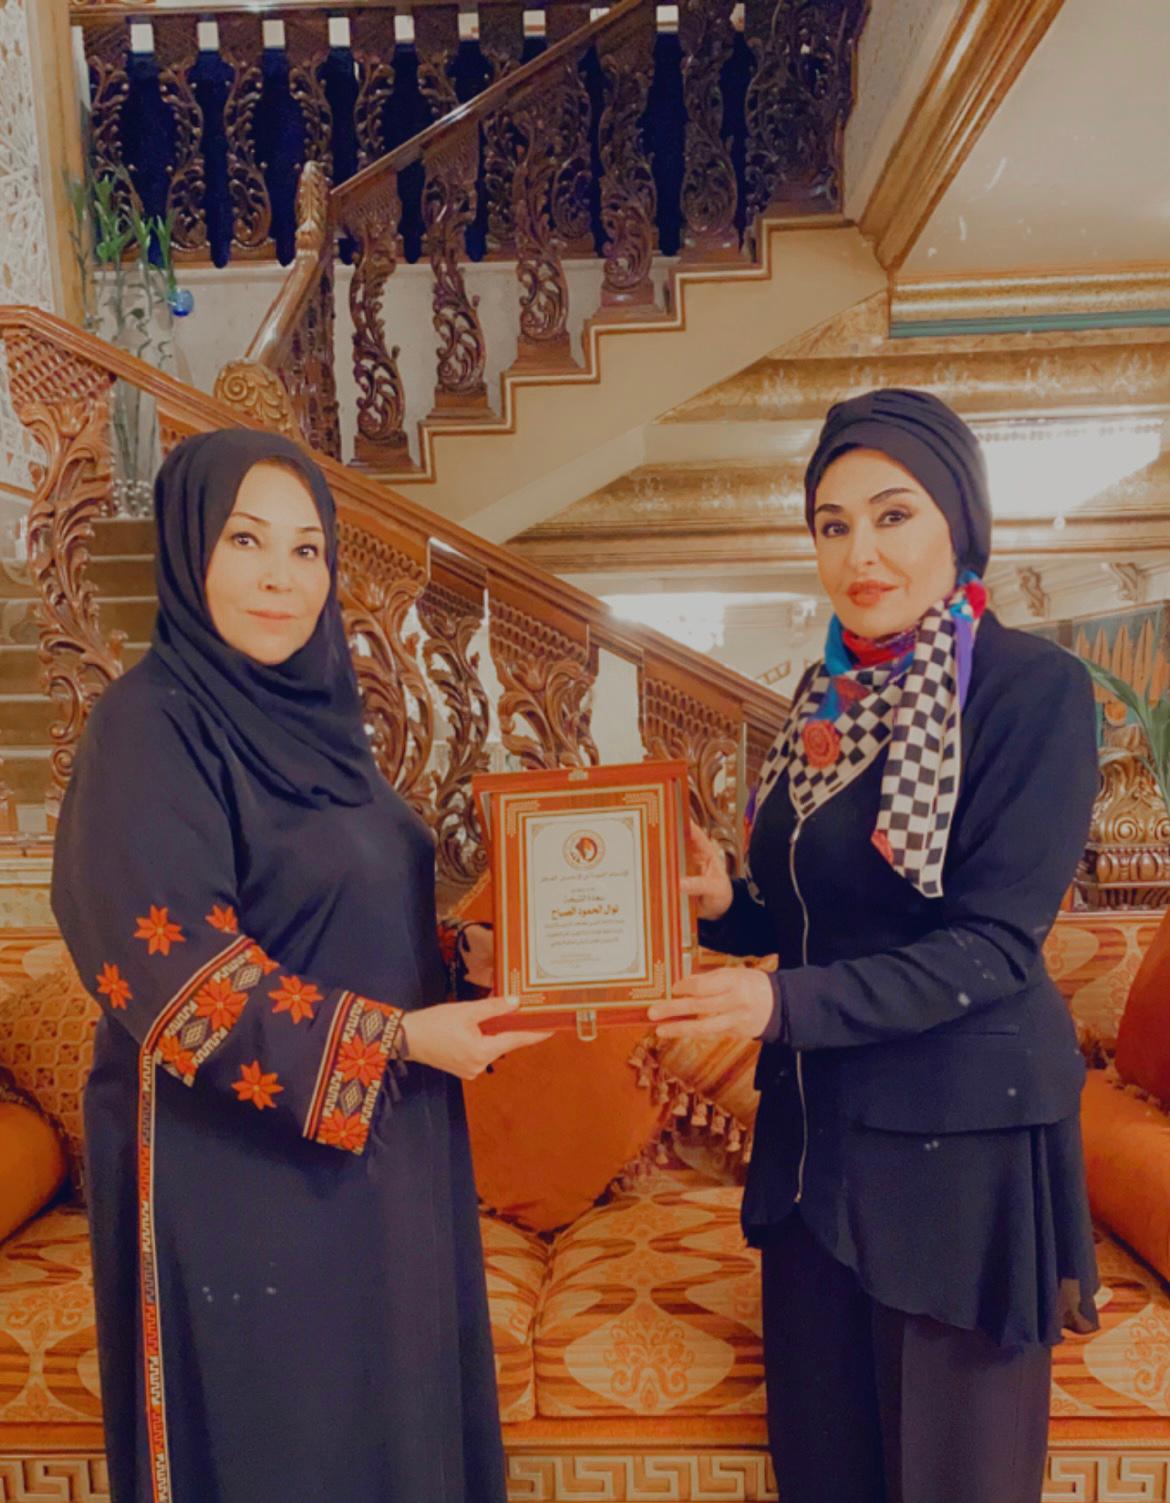 الشيخة نوال الحمود المالك الصباح تستقبل الدكتورة ميسون تليلان رئيسة الاتحاد النسائي الاردني 